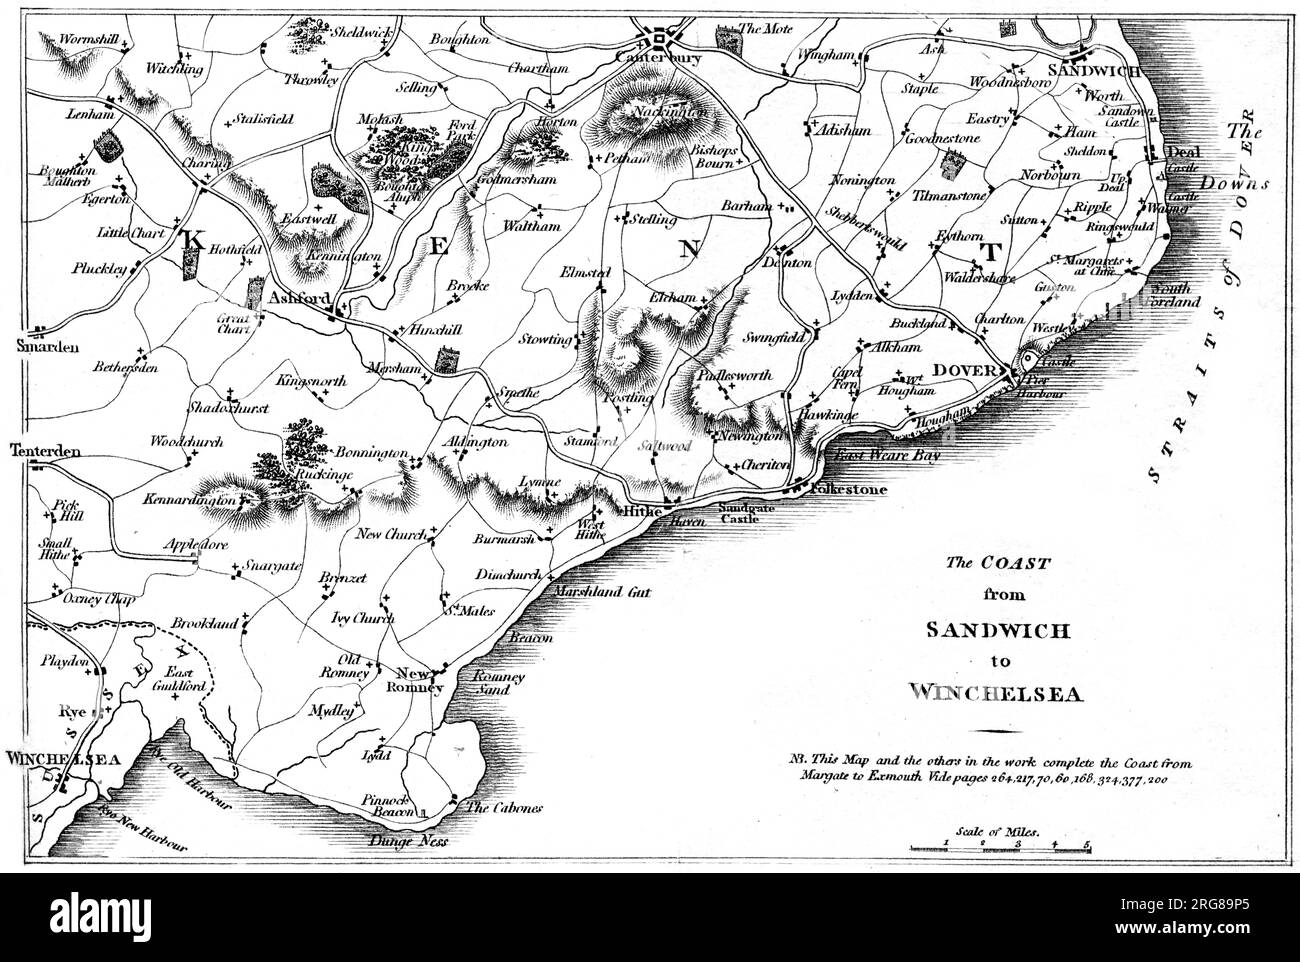 Eine Karte der Küste von Sandwich bis Winchelsea UK, gescannt mit hoher Auflösung von einem Buch, das 1806 gedruckt wurde. Glaubte, dass es keine Urheberrechte gibt Stockfoto